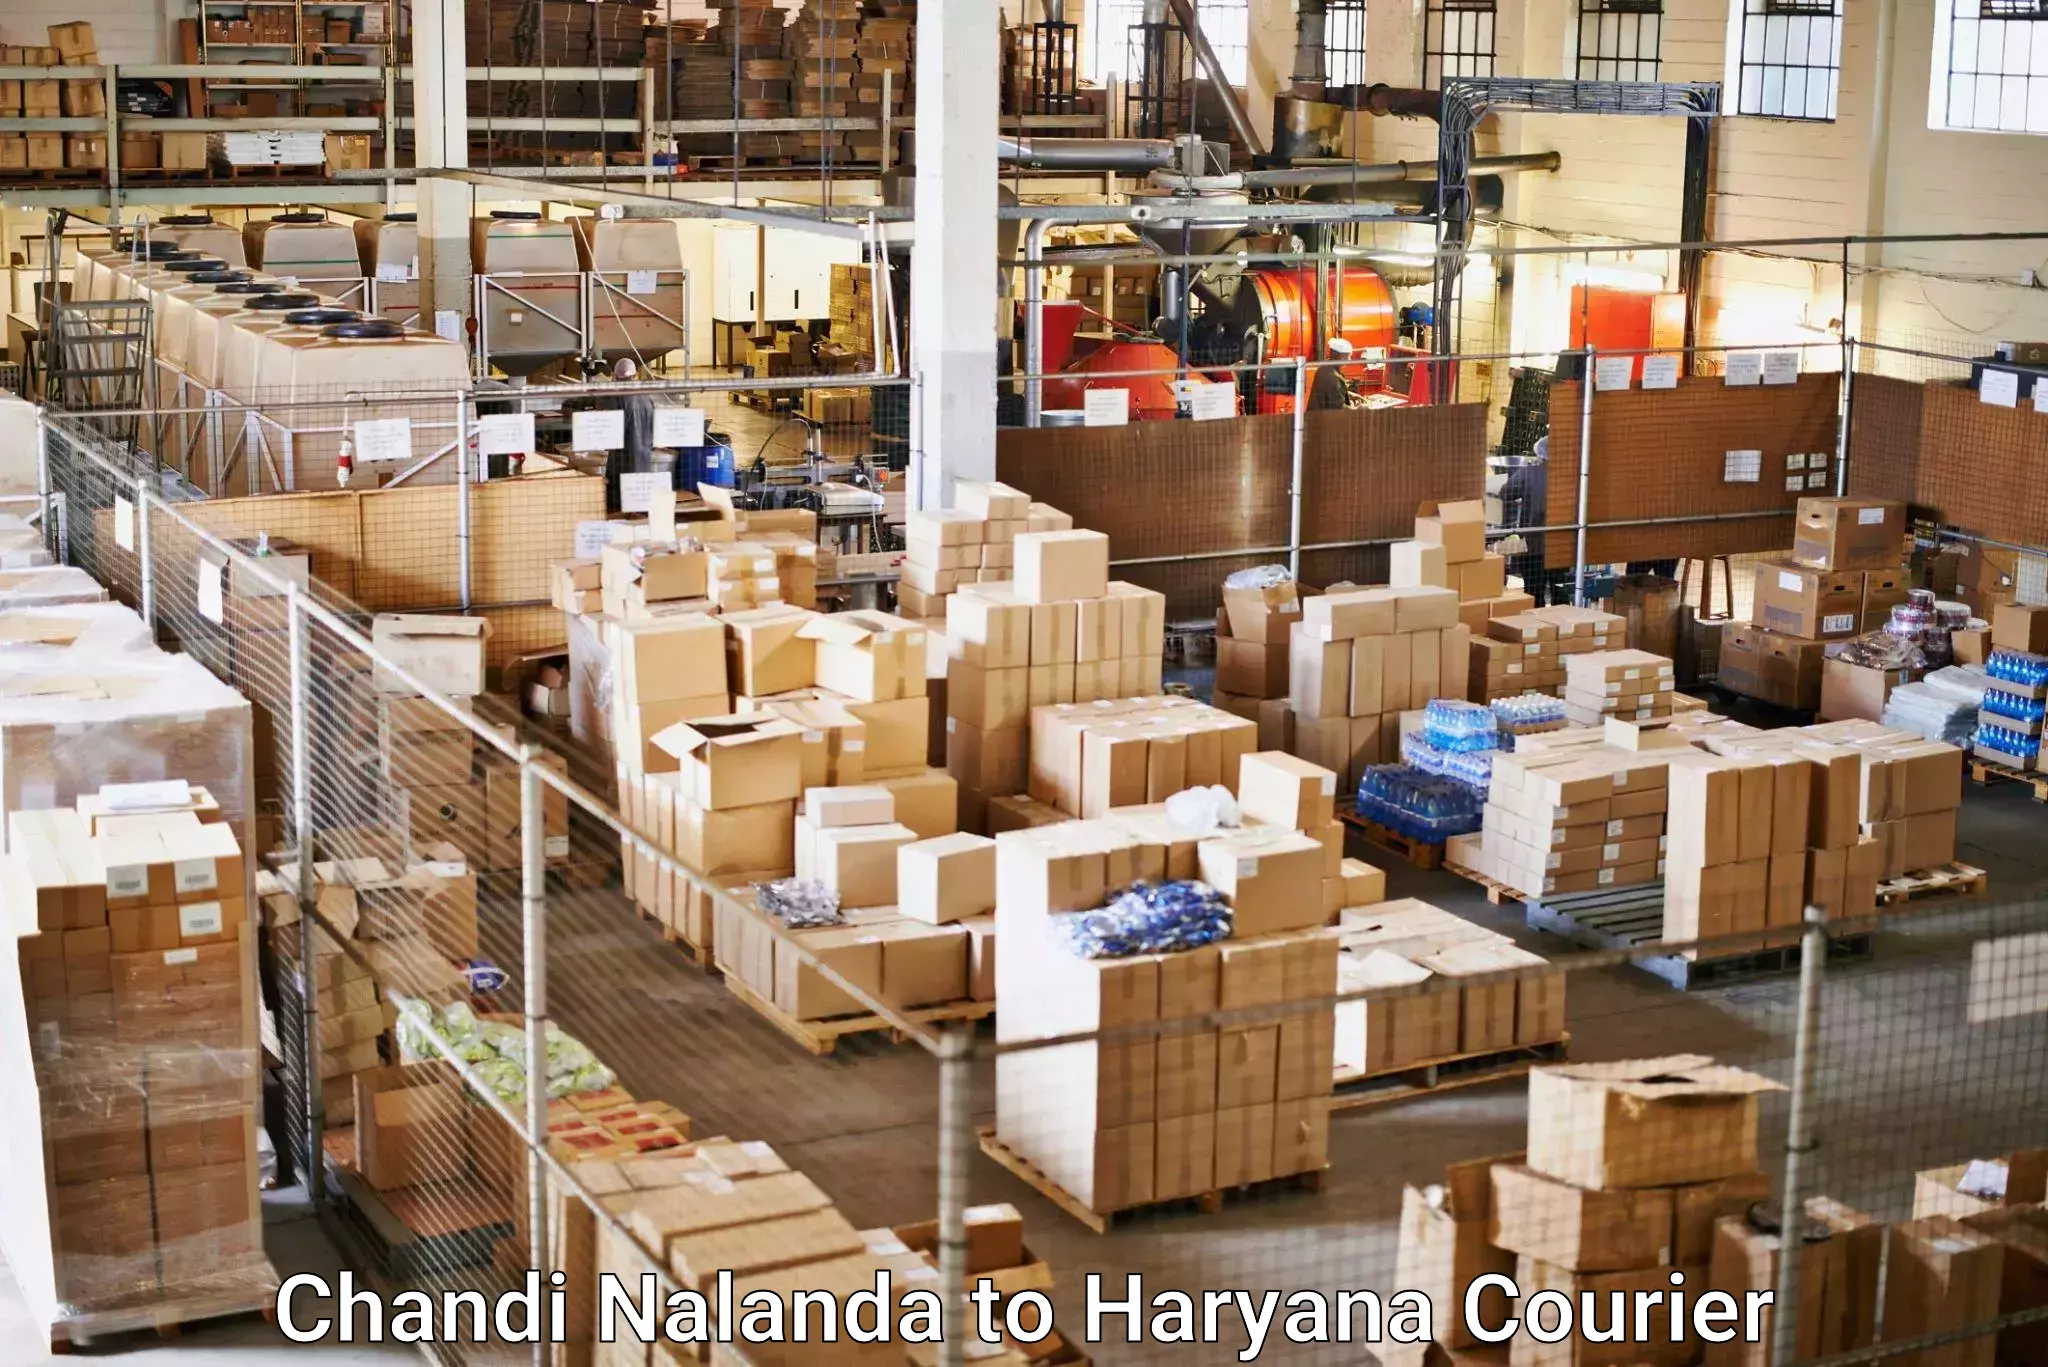 International courier networks Chandi Nalanda to Mandi Dabwali